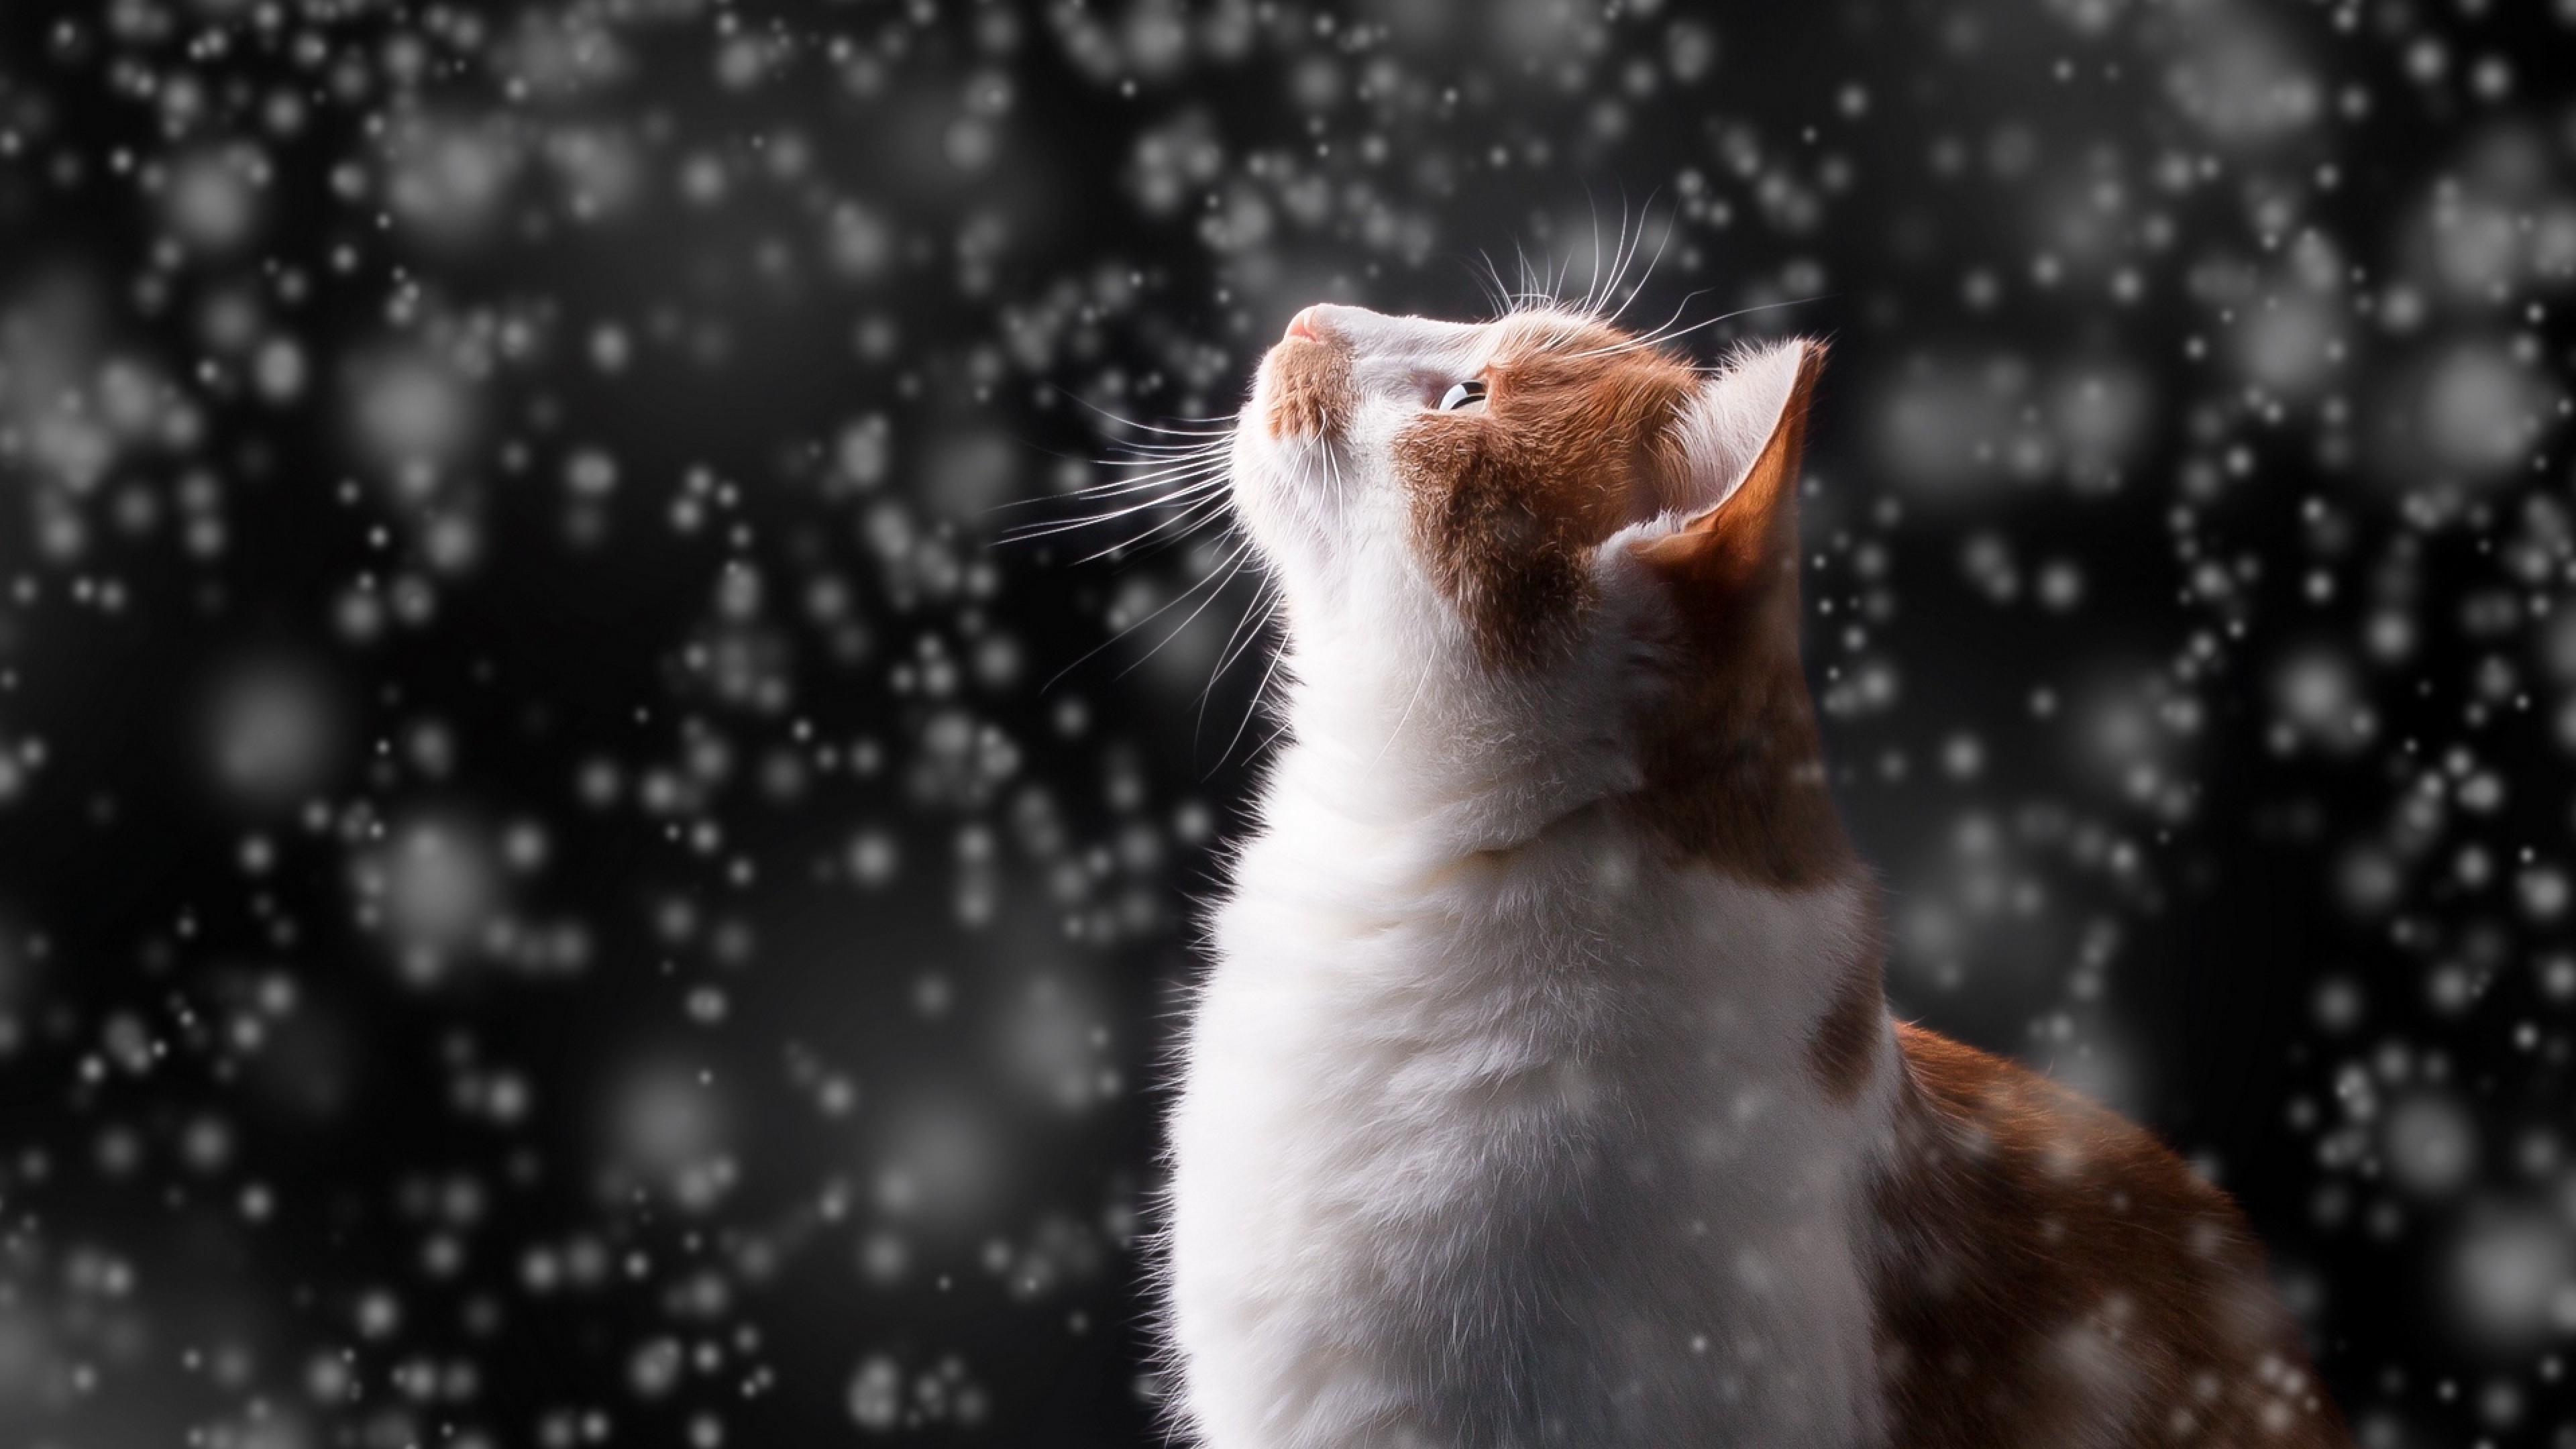 Cat watches the snow HD Wallpaper 4K Ultra HD - HD Wallpaper - Wallpapers .net